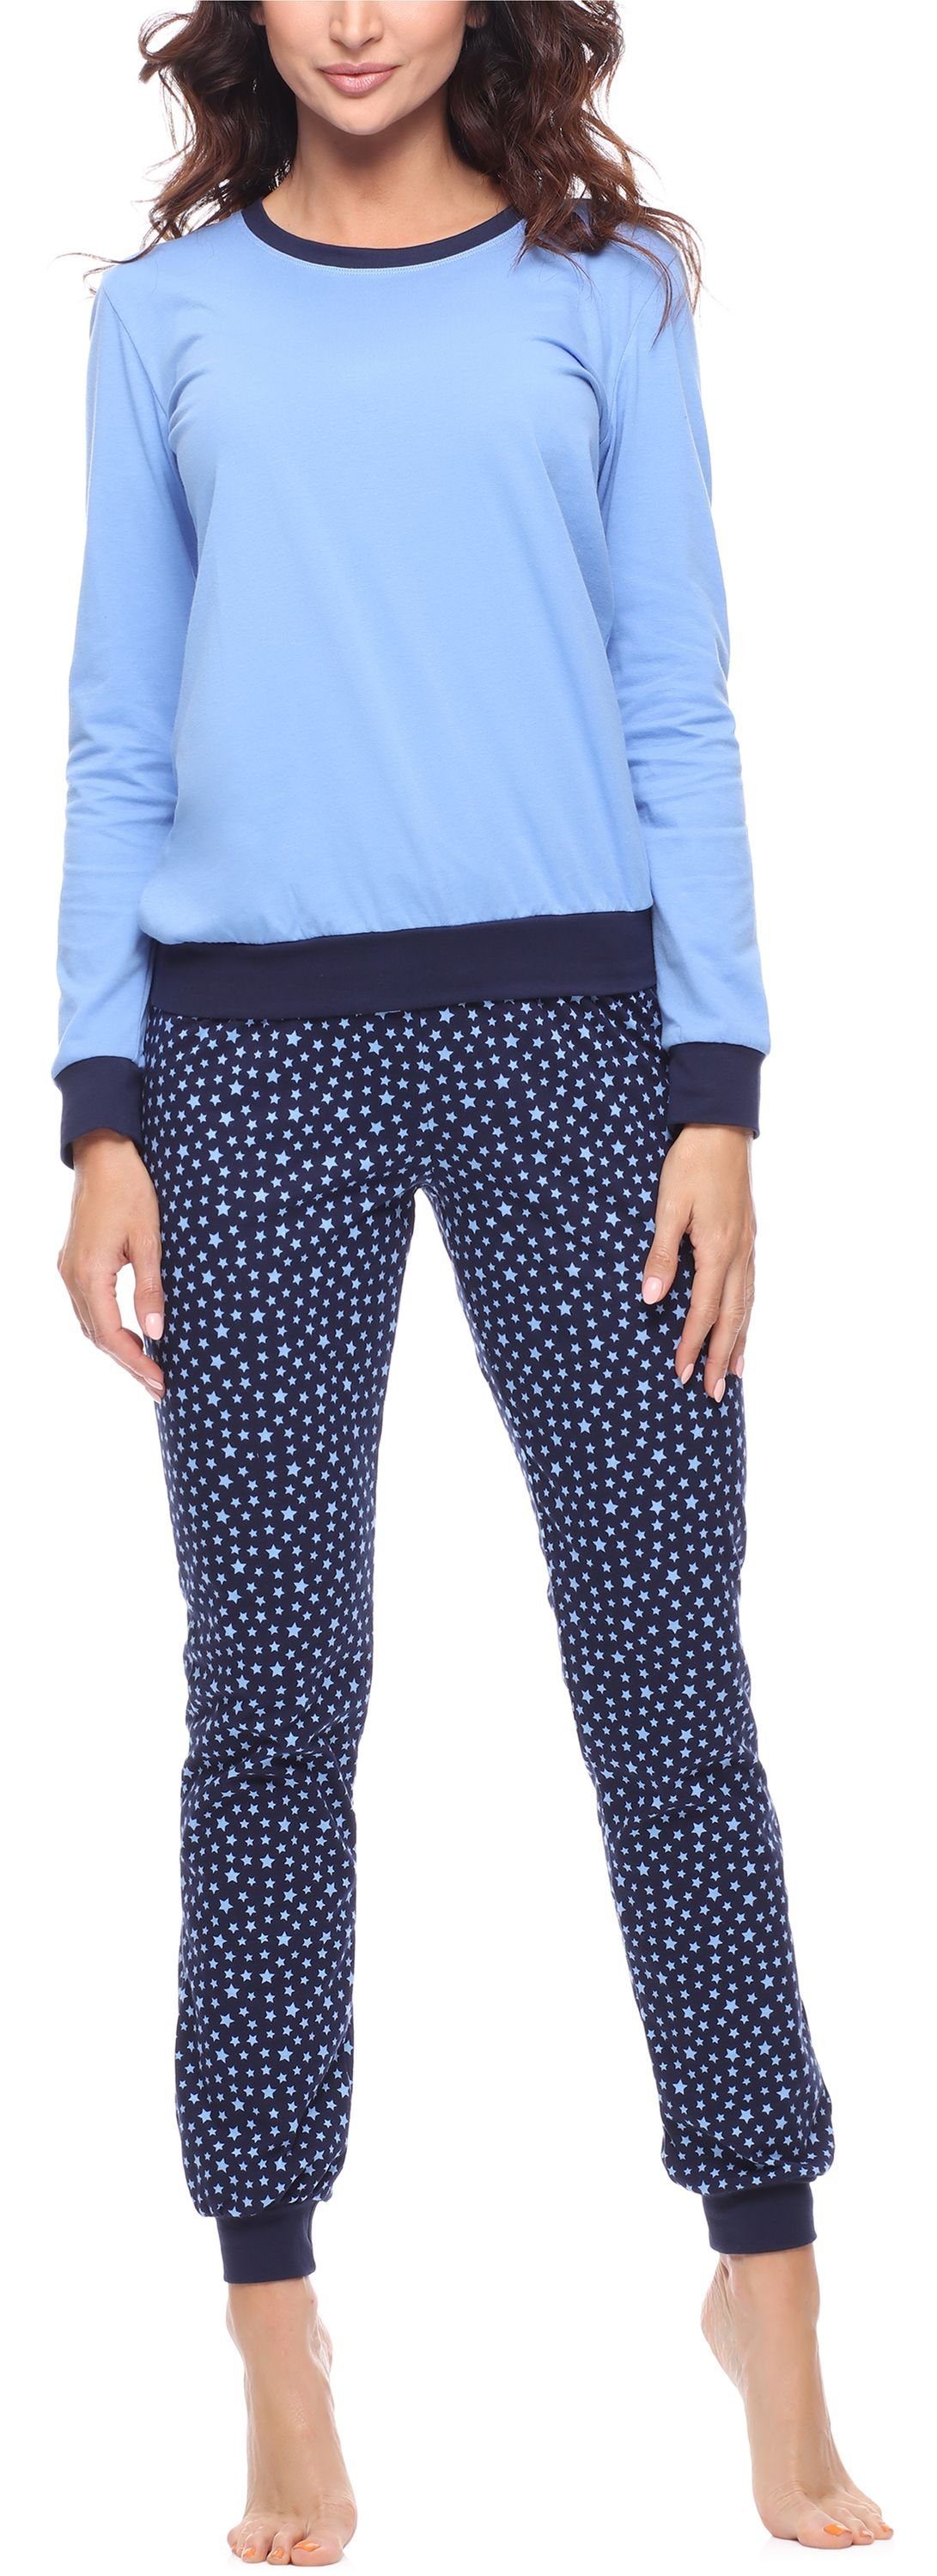 Merry Style Schlafanzug Damen Schlafanzug Zweiteiler Pyjama lang bunt mit Muster MS10-268 Blau/Sterne Marineblau